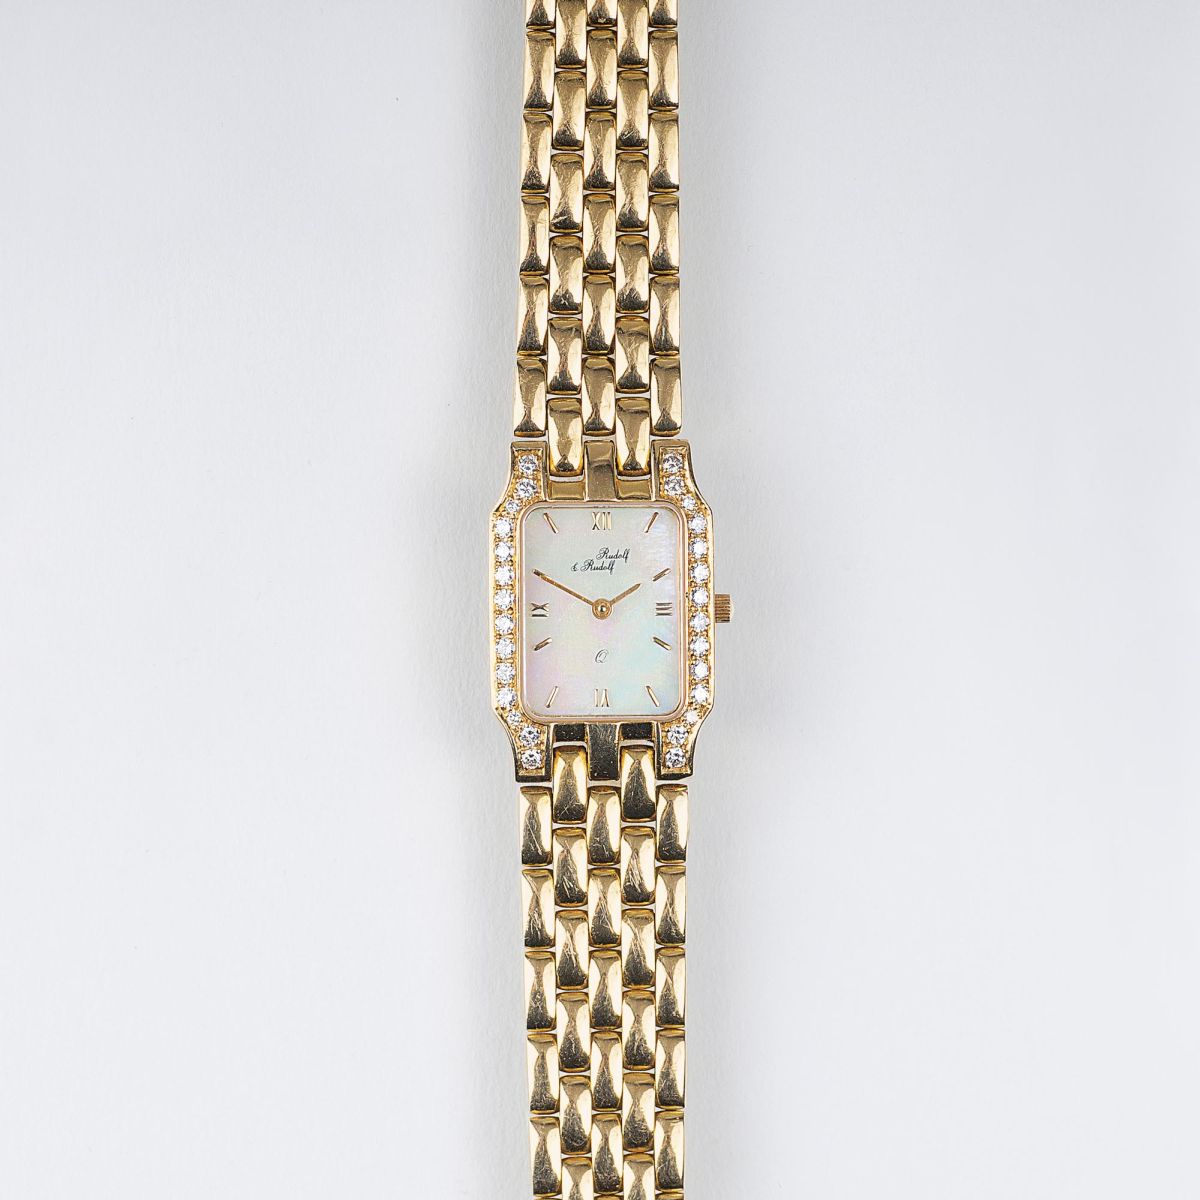 A Ladies' Watch with Diamonds by Rudolf & Rudolf